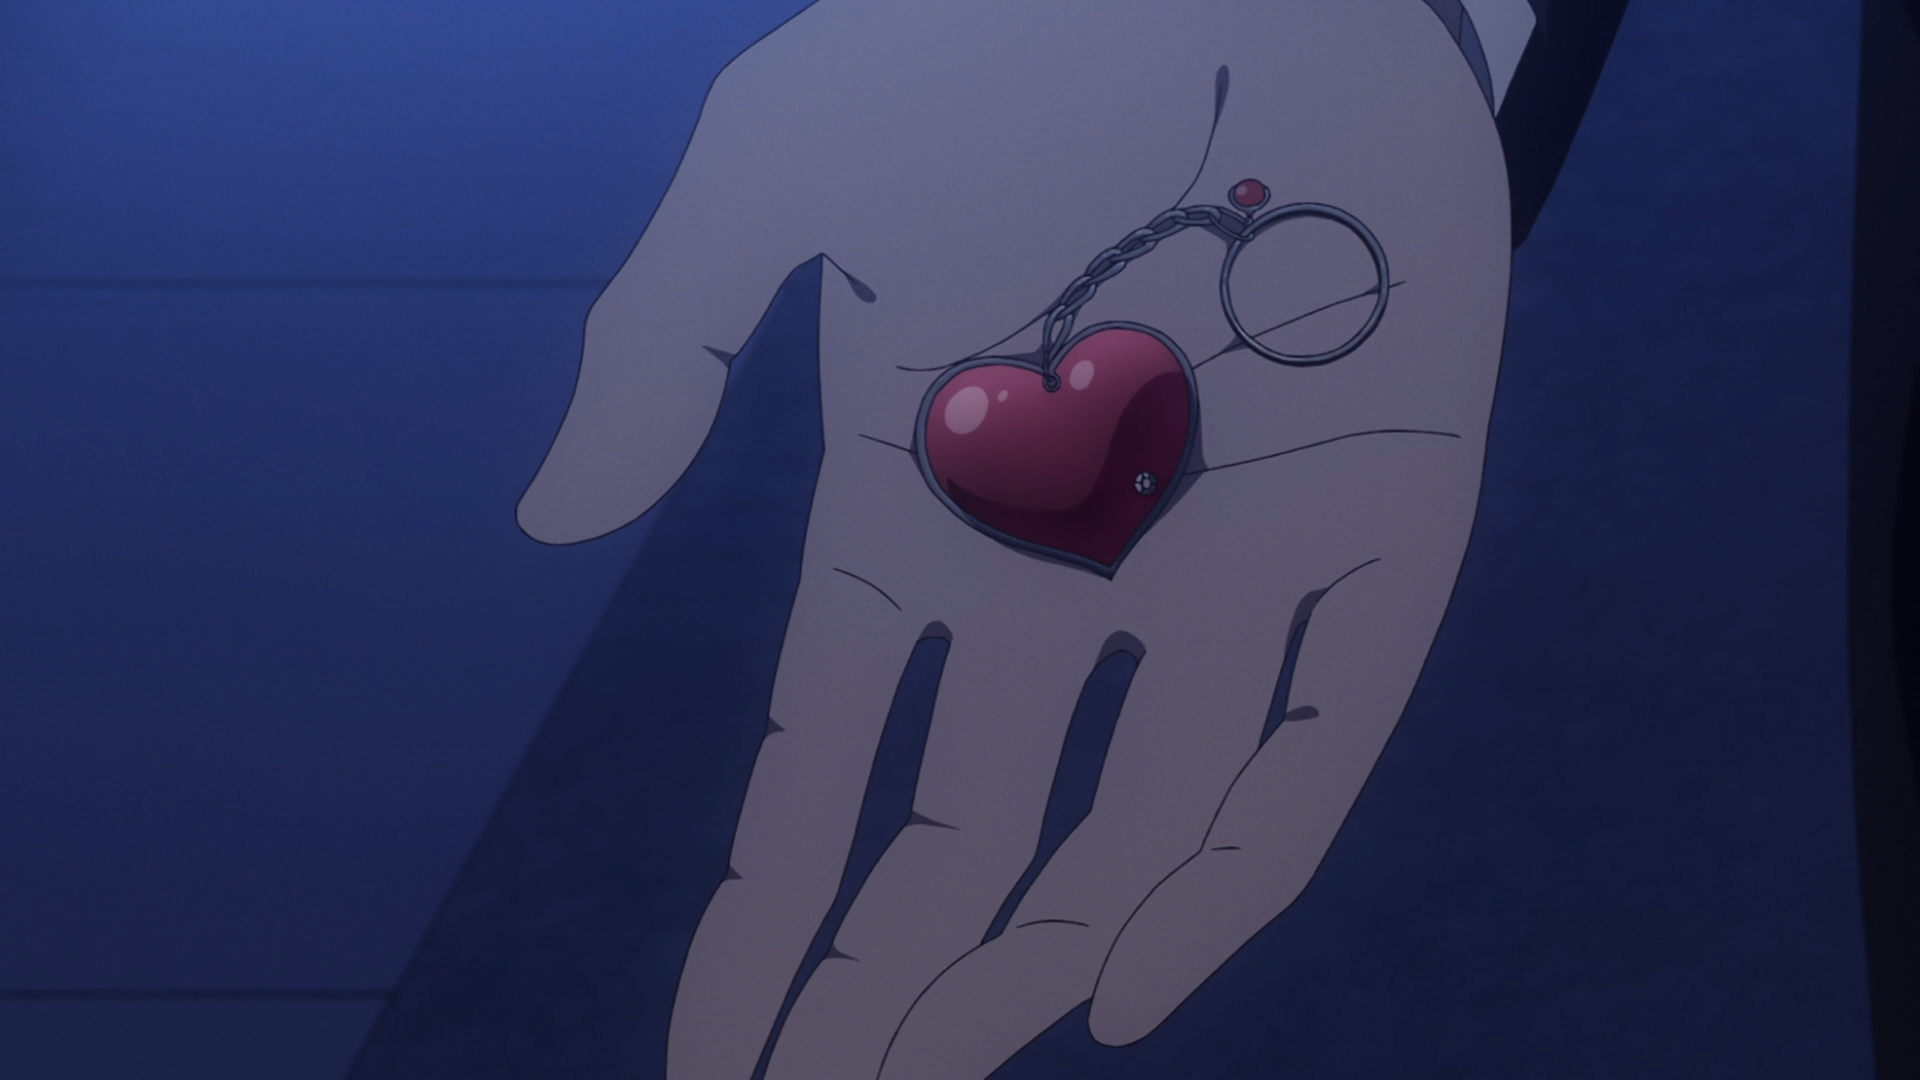 Captura de tela do episódio 13 da terceira temporada de "Kaguya-sama: Love is War", mostrando um chaveiro de coração